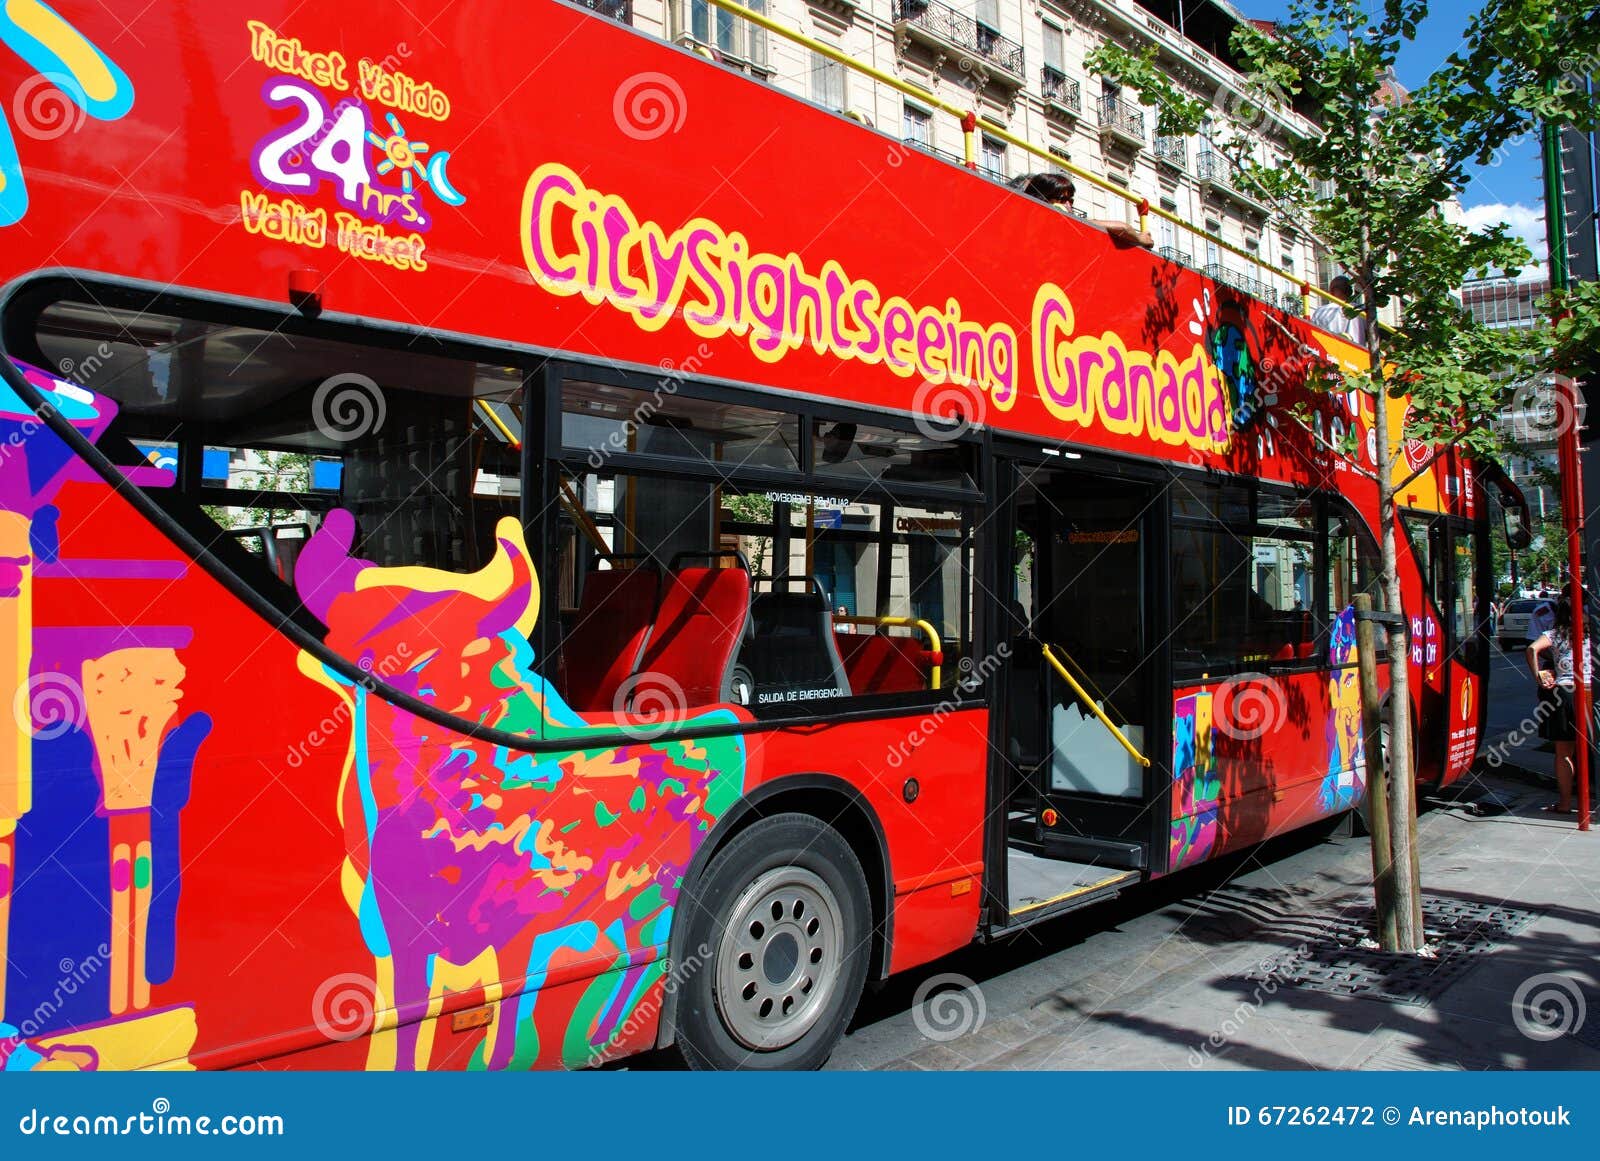 granada tour bus